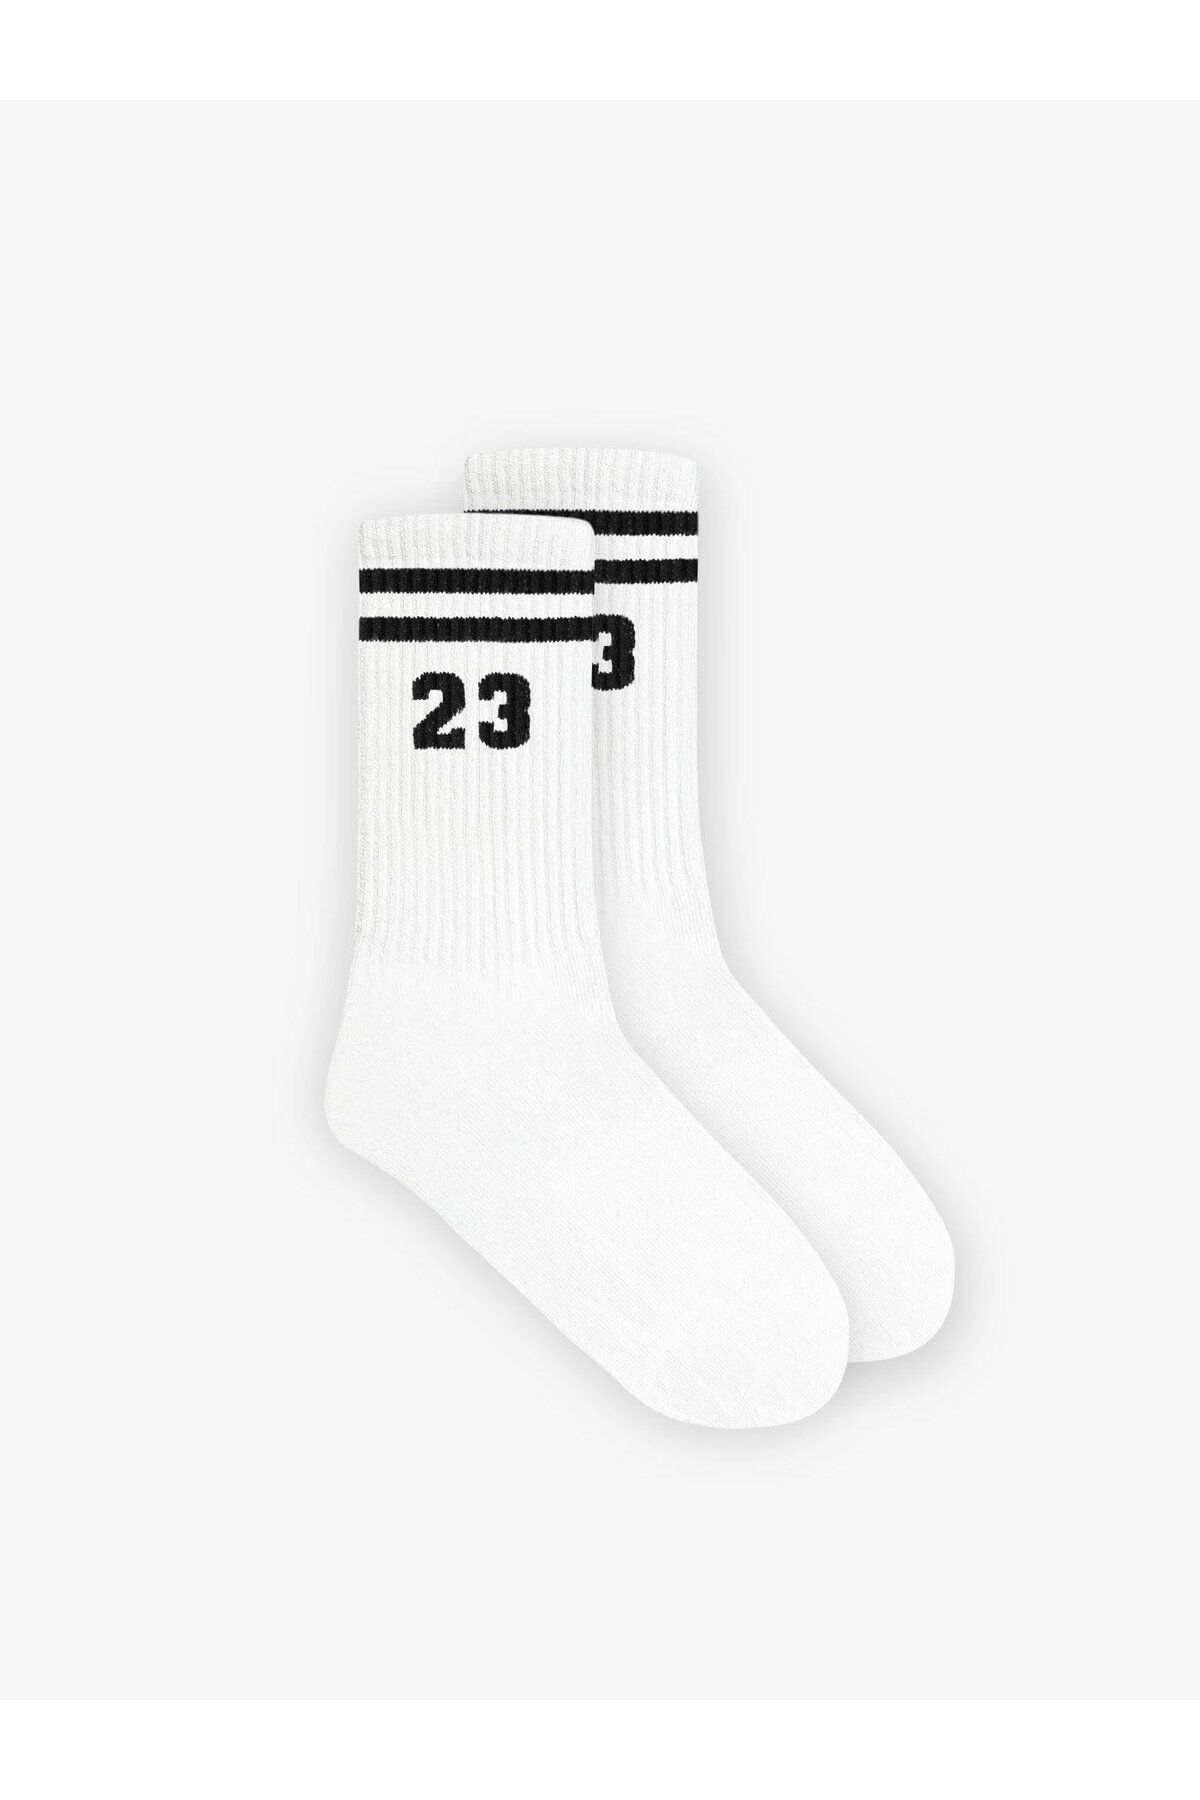 ablukaonline Unisex "23" Baskılı Uzun Kolej Tenis Çorap Beyaz